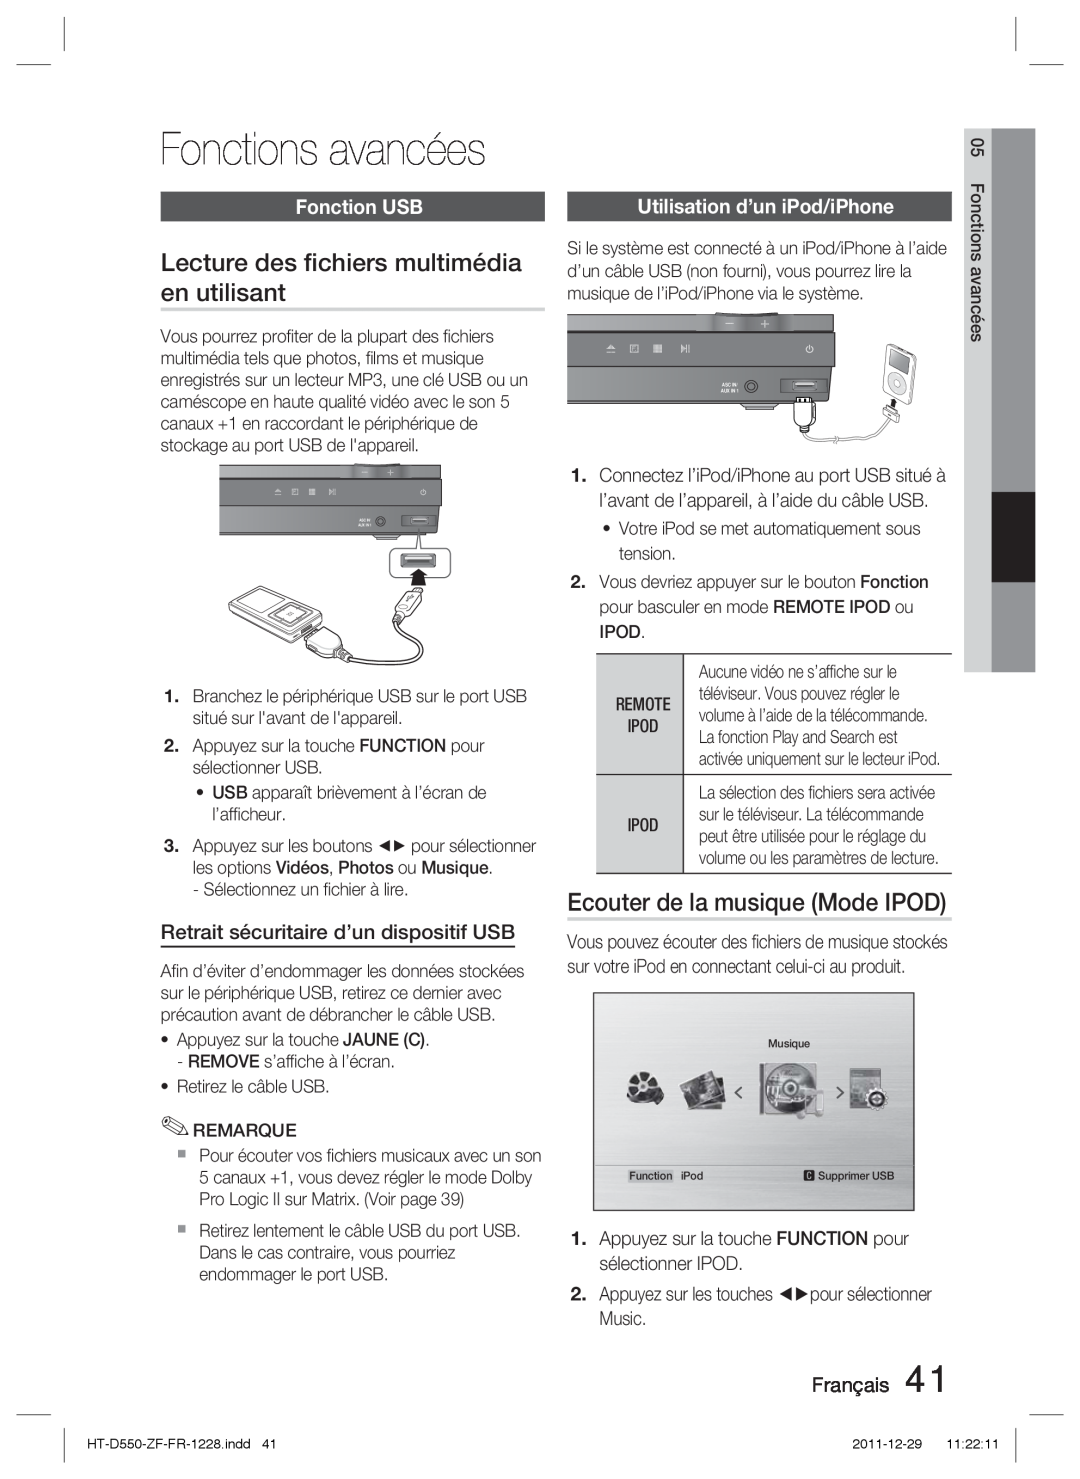 Samsung HT-D550/XN manual Fonctions avancées, Lecture des ﬁchiers multimédia, en utilisant, Ecouter de la musique Mode IPOD 